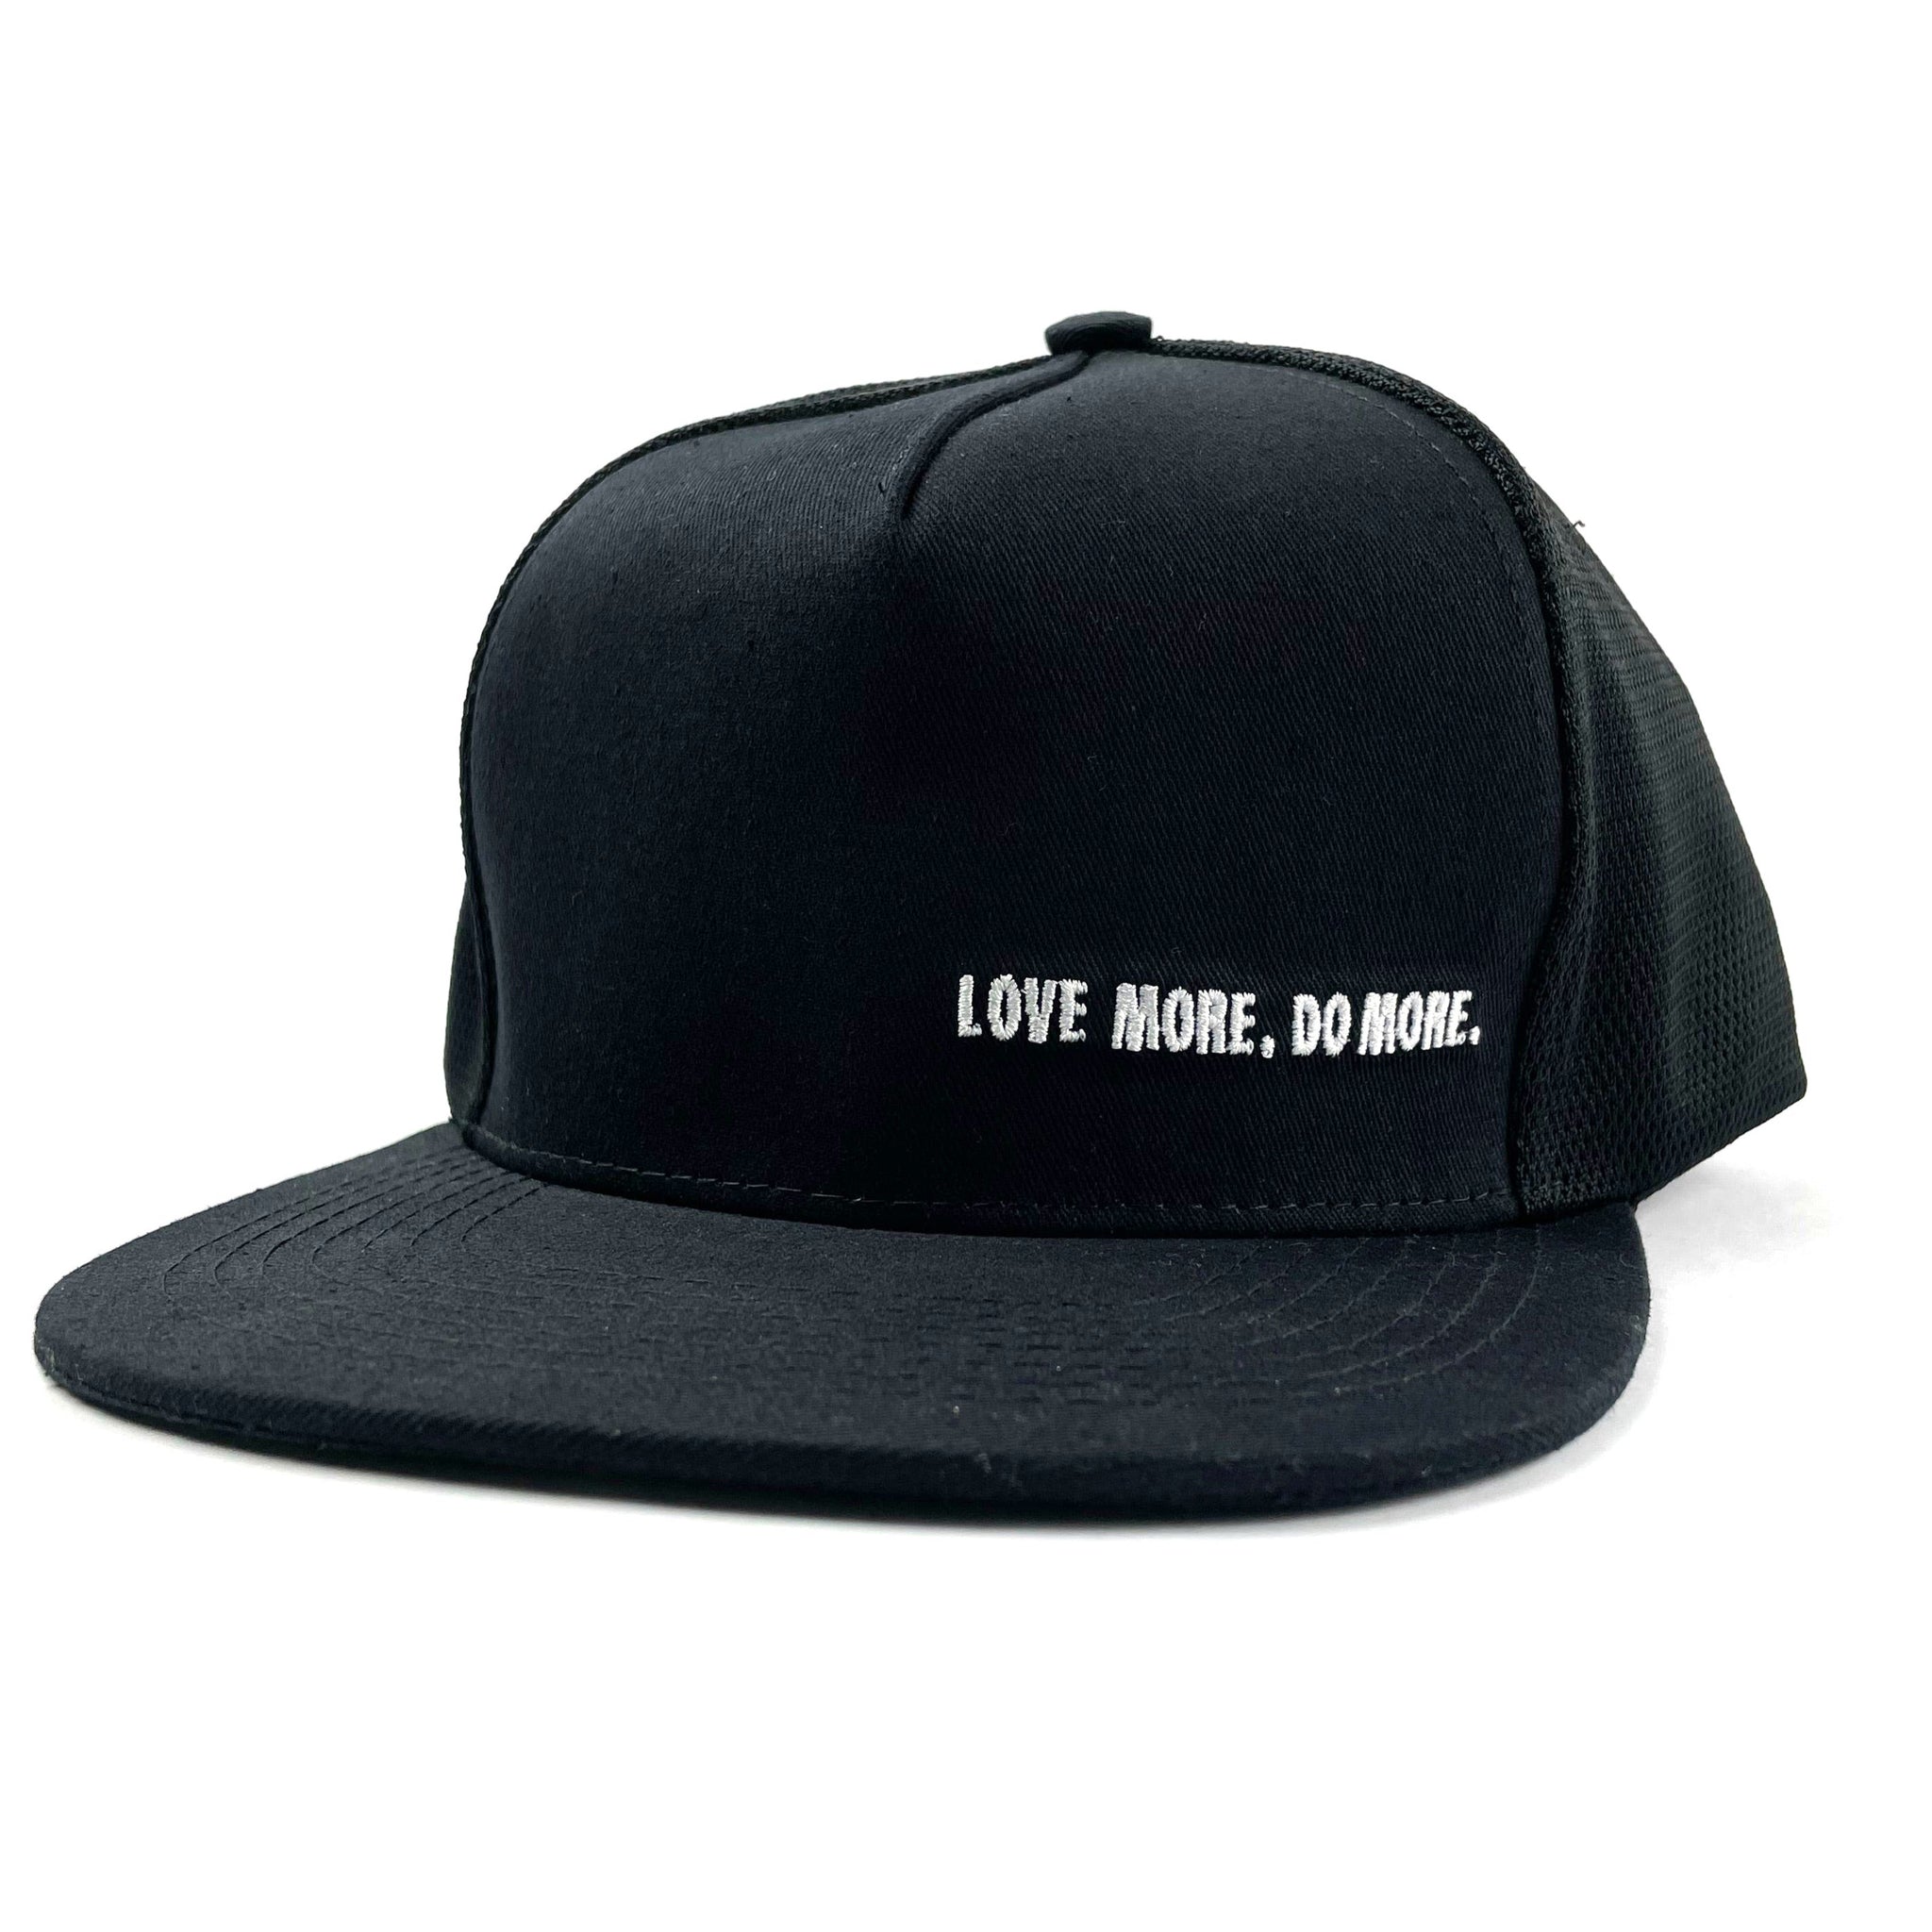 Love More Do More / FMSC Black Trucker Hat - FMSCMarketplace.org